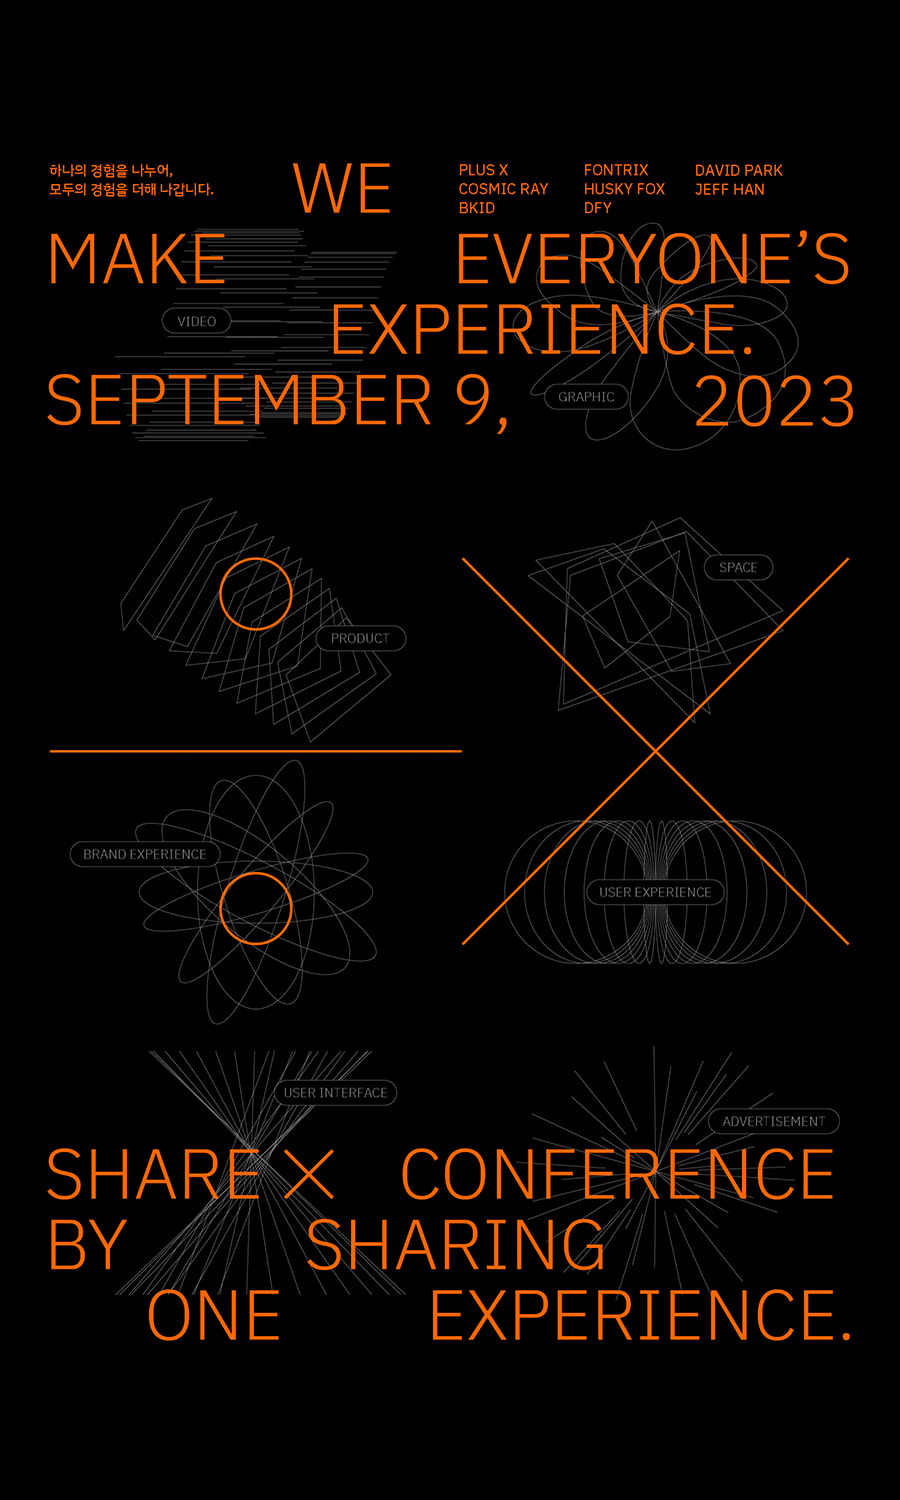 플러스엑스X패스트캠퍼스, ‘SHARE X 디자인 컨퍼런스‘ 개최 - Plus X 플러스엑스X패스트캠